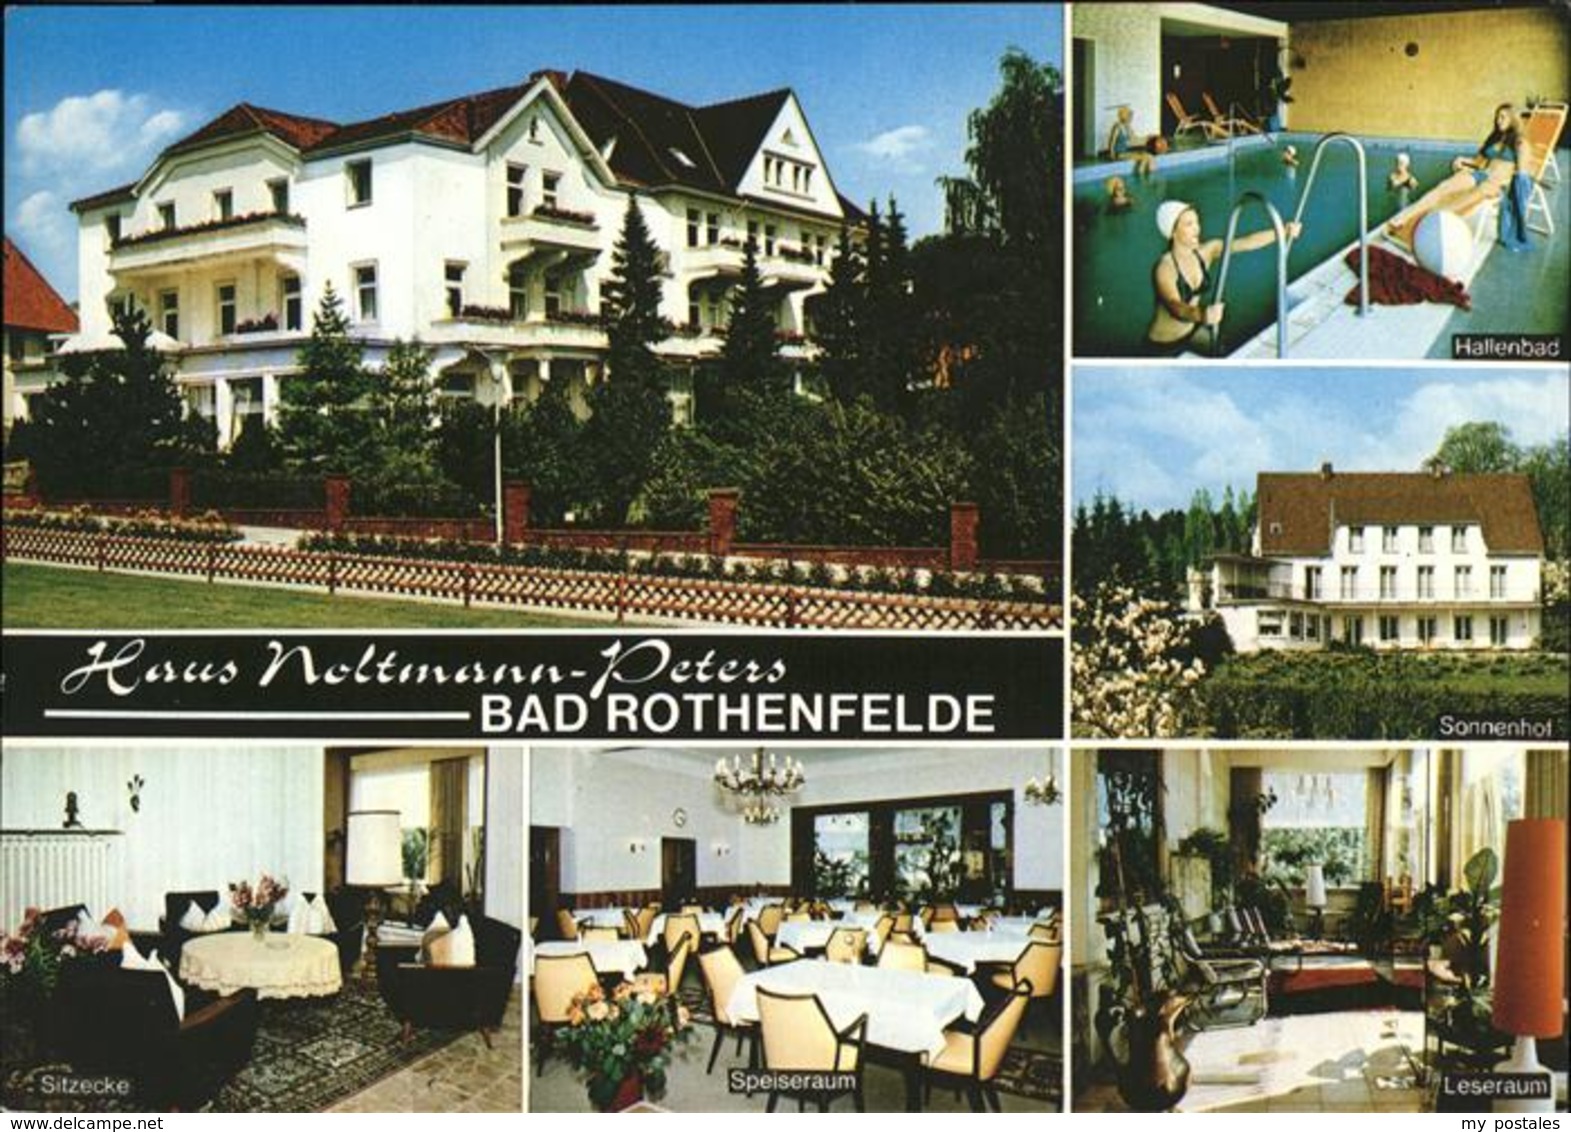 41228213 Bad Rothenfelde Haus Noltmann Peters Bad Rothenfelde - Bad Rothenfelde